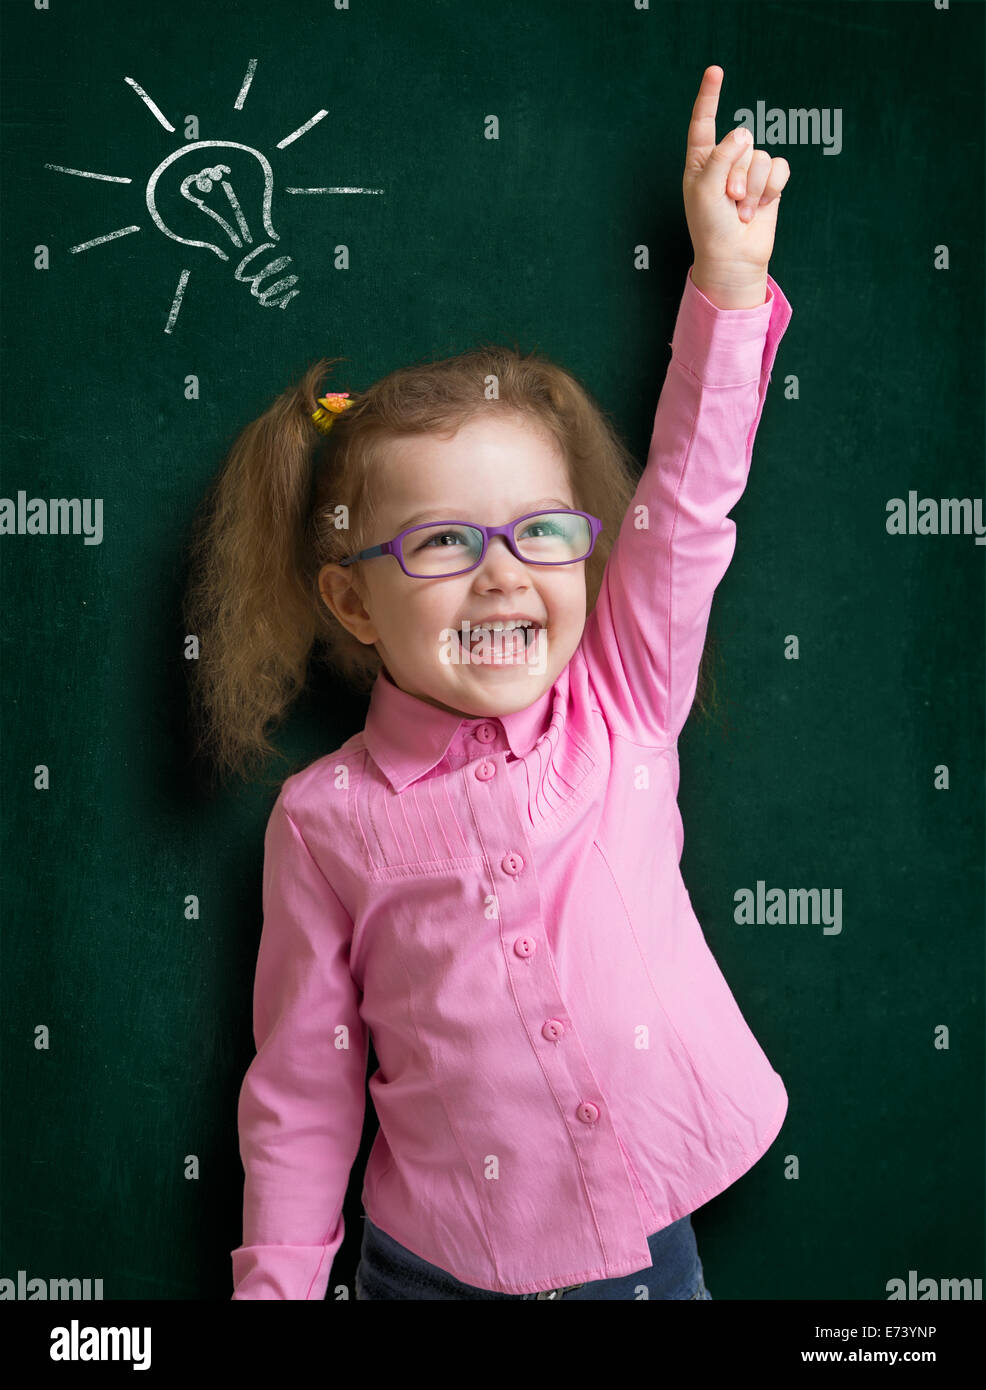 Happy kid girl à verres à l'idée lumineuse, debout près de l'école tableau noir en classe Banque D'Images